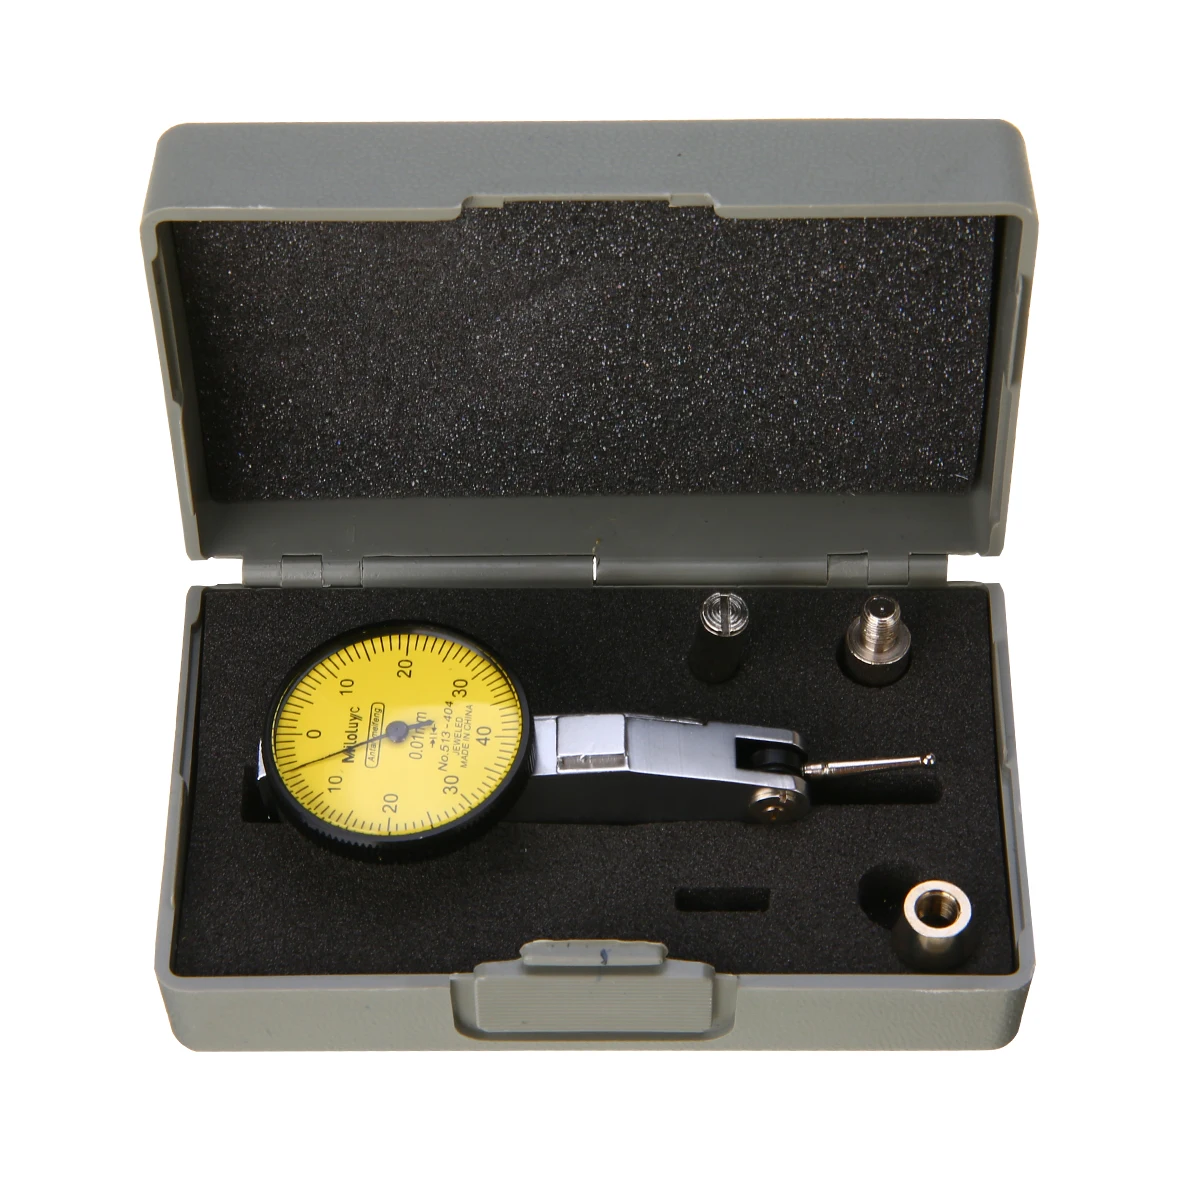 Стрелочный индикатор, измерительный индикатор, прецизионный метрический индикатор с креплением в виде ласточкиного хвоста 0-40-0 0,01 мм, точный измерительный инструмент Mayitr